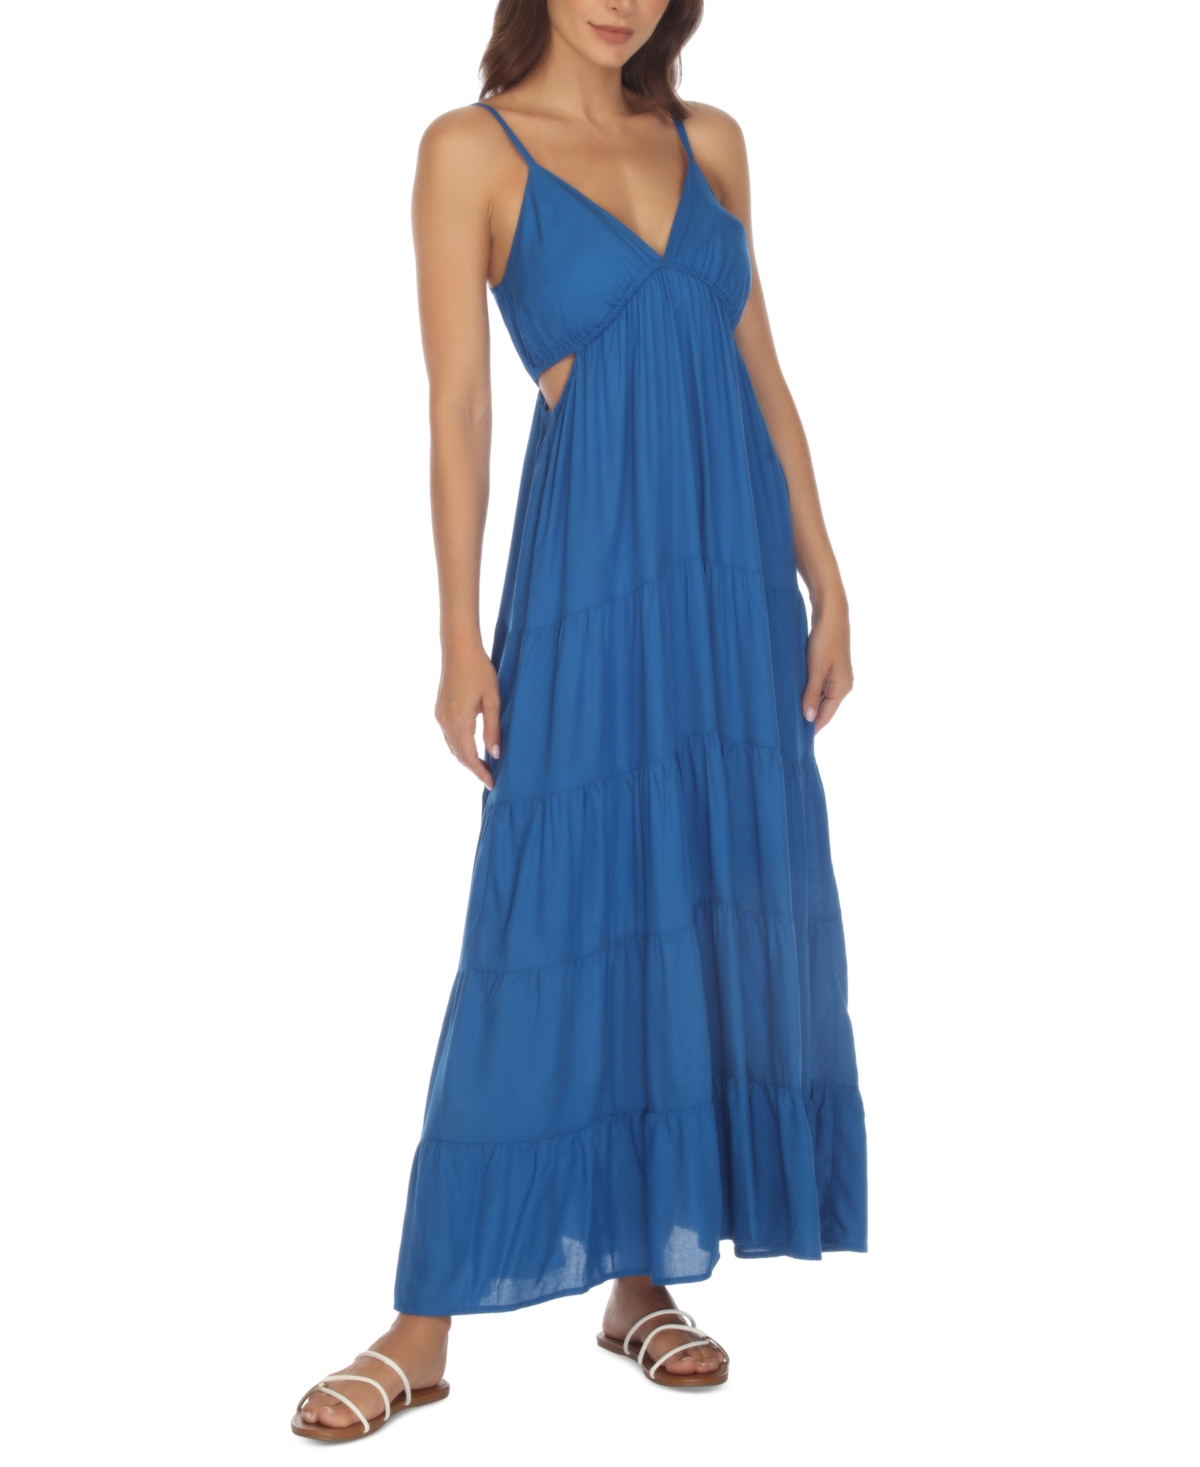 Women's Side-Cutout Maxi Dress Cover-Up - Lapis Blue